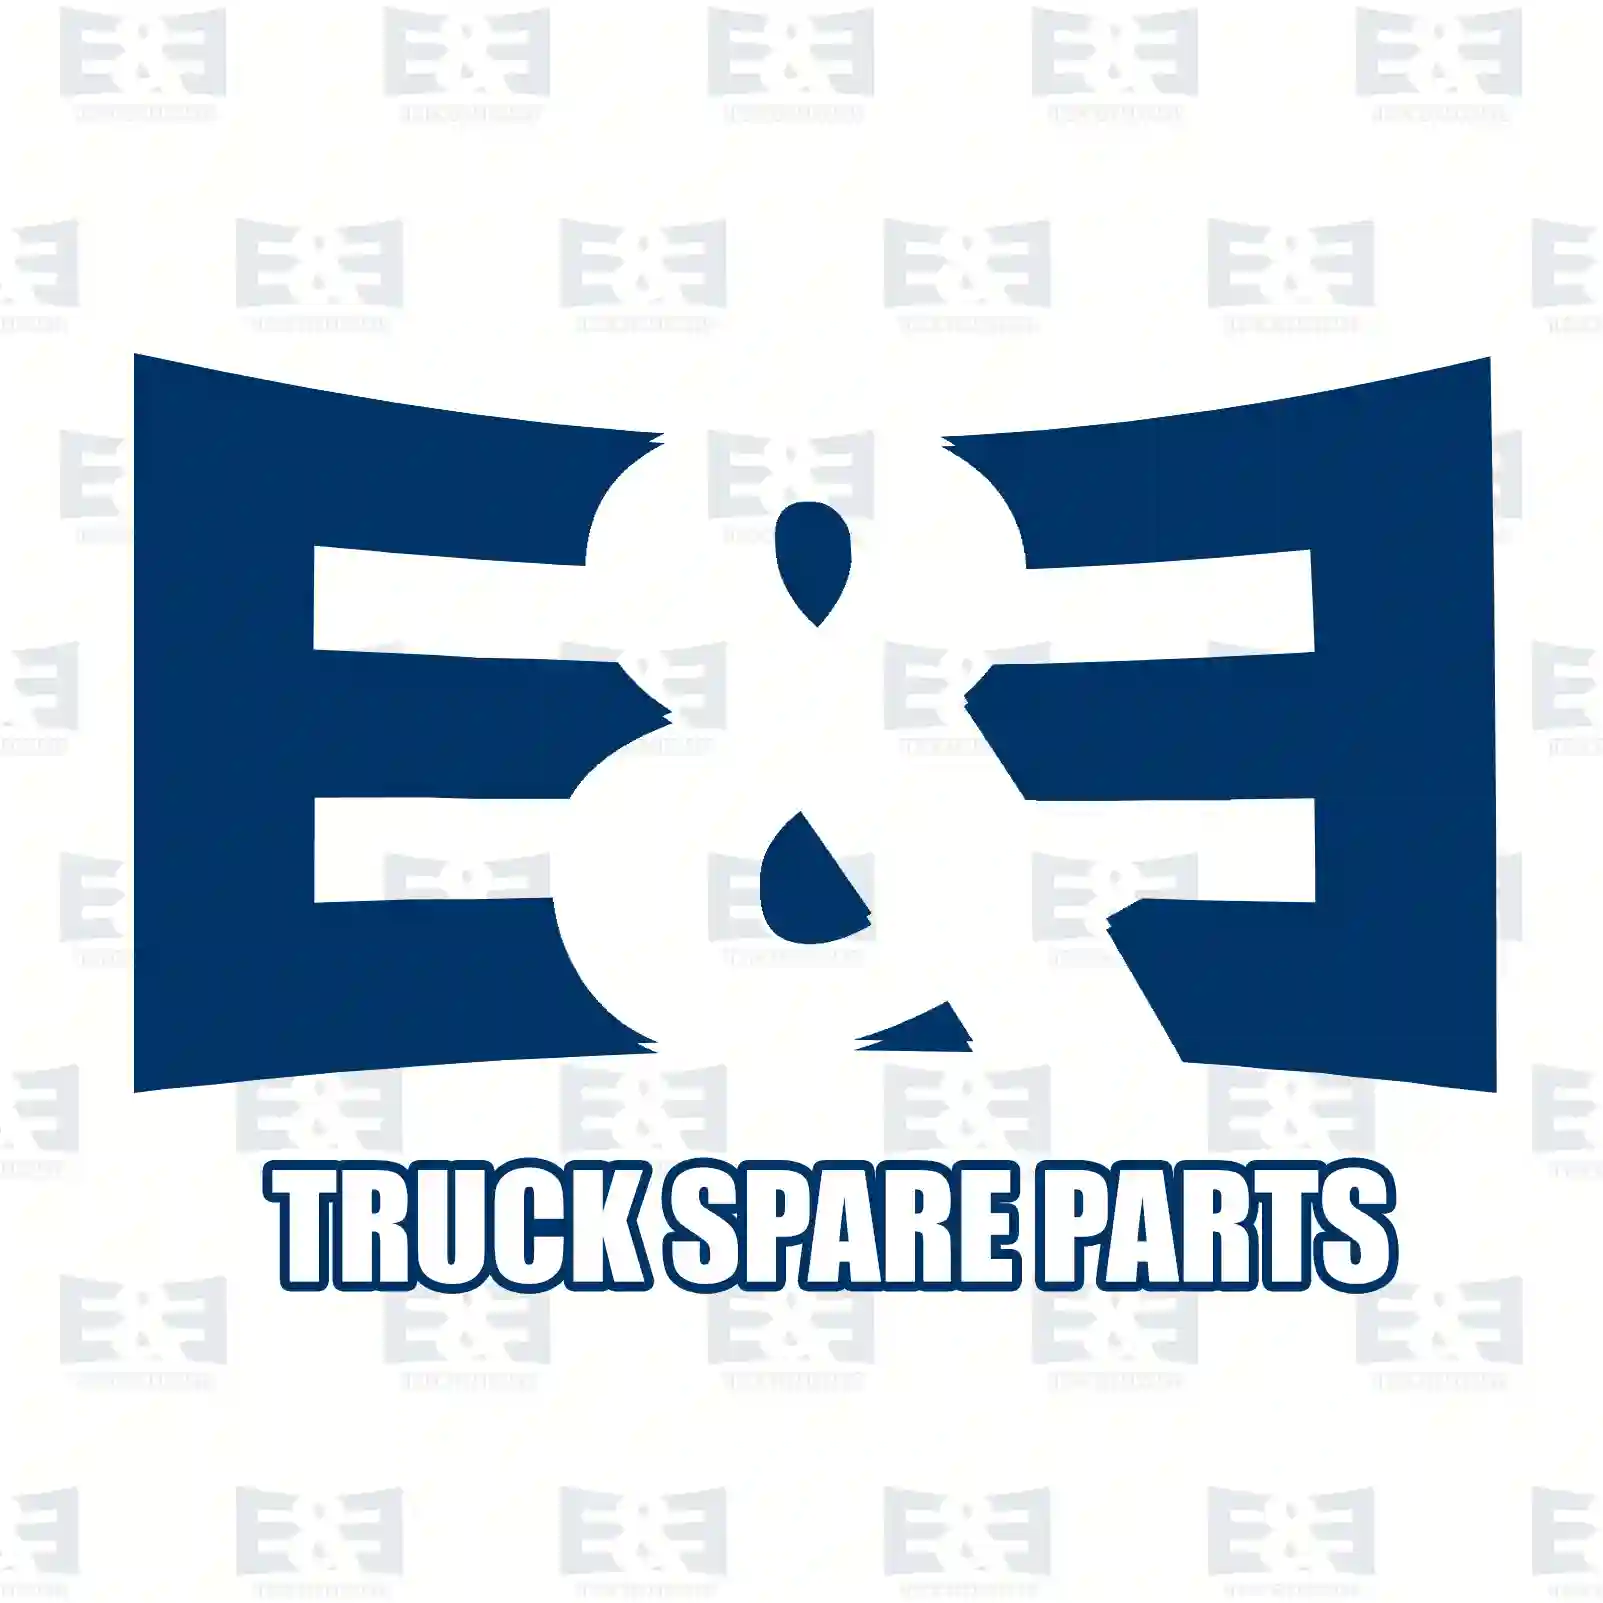 Wiper nozzle, 2E2293120, 81264820003, A0024842109 ||  2E2293120 E&E Truck Spare Parts | Truck Spare Parts, Auotomotive Spare Parts Wiper nozzle, 2E2293120, 81264820003, A0024842109 ||  2E2293120 E&E Truck Spare Parts | Truck Spare Parts, Auotomotive Spare Parts